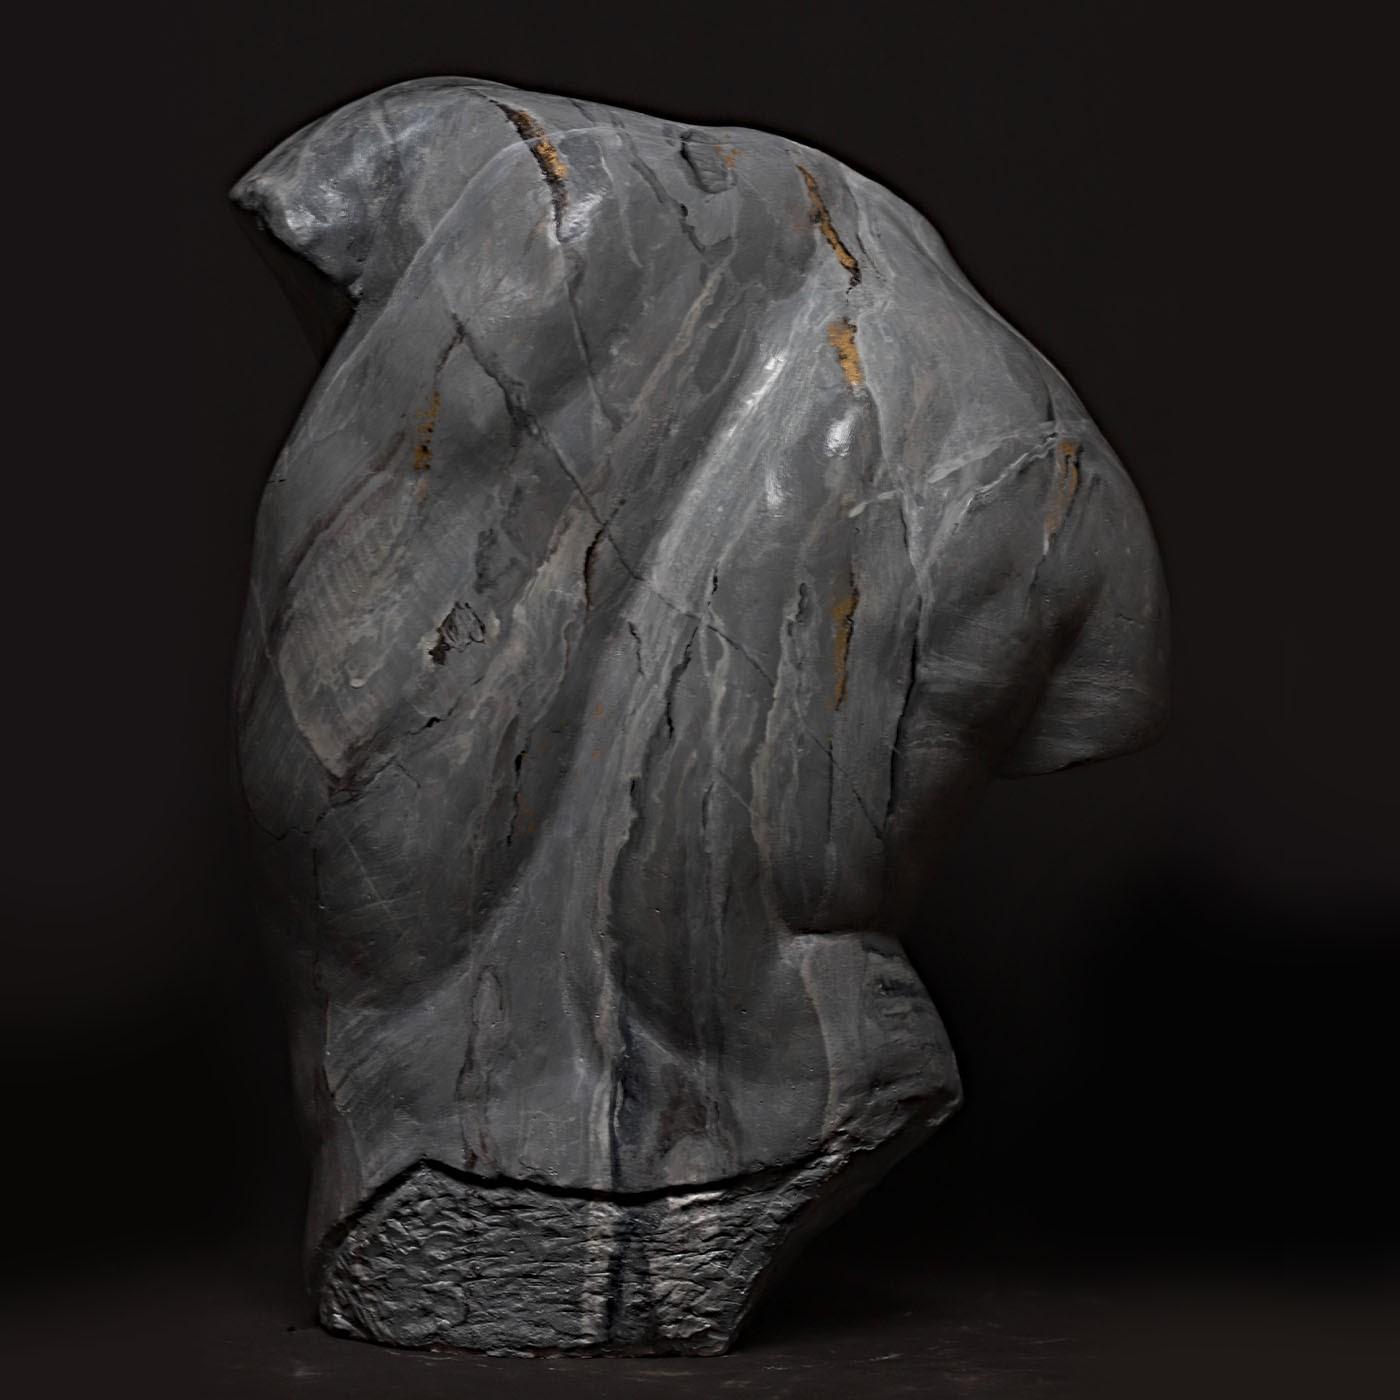 Se trata de un busto de escayola que reproduce el Torso Gaddi, la famosa escultura fragmentaria expuesta en los Museos Uffizi de Florencia, que inspiró a muchos grandes artistas del Renacimiento, entre ellos Miguel Ángel. La pieza, elaborada a mano